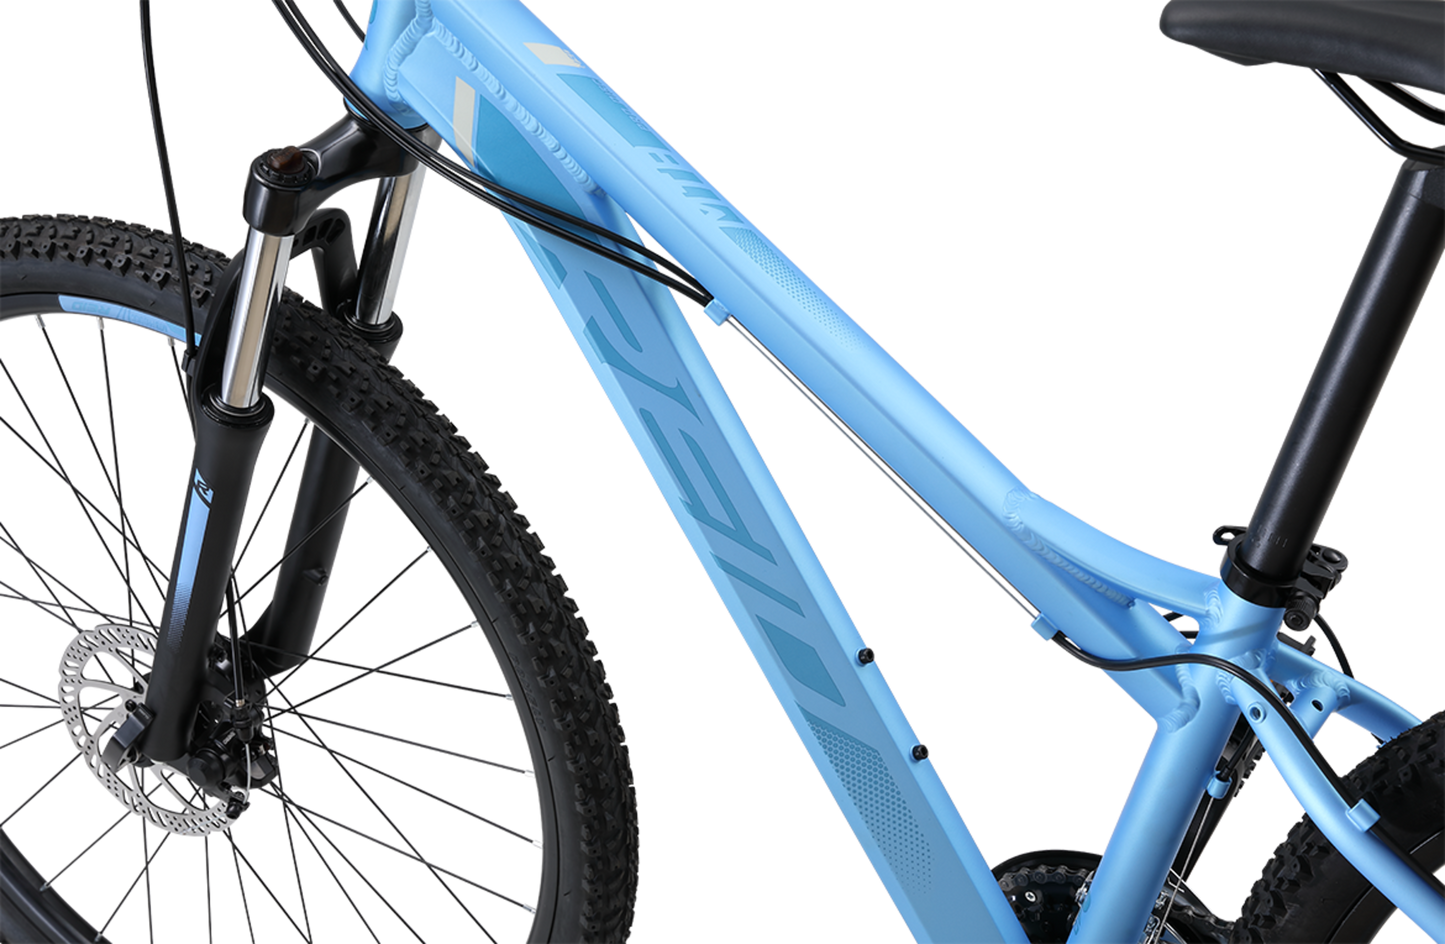 MTB Pro 27.5" Disc WSD Mountain Bike in light blue showing WSD bike frame geometry from Reid Cycles Australia